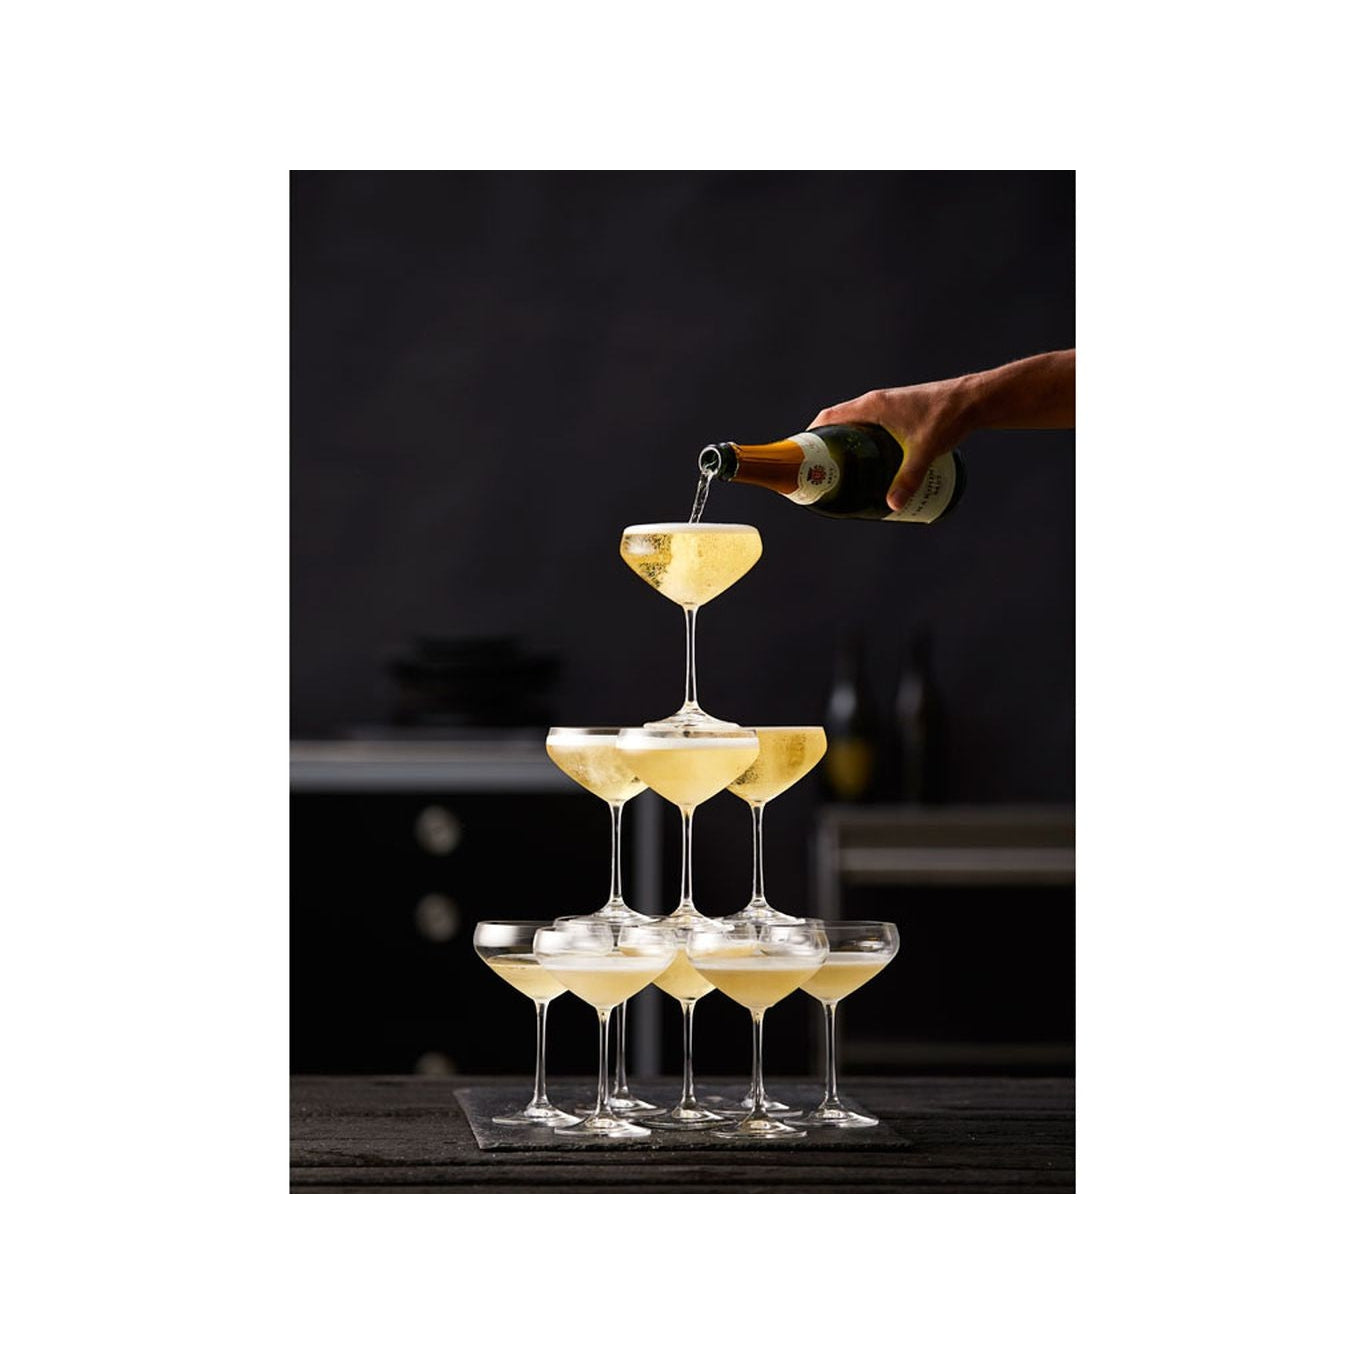 Lyngby Glas Juvel Champagne Bowl 34 Cl, 4 Pcs.